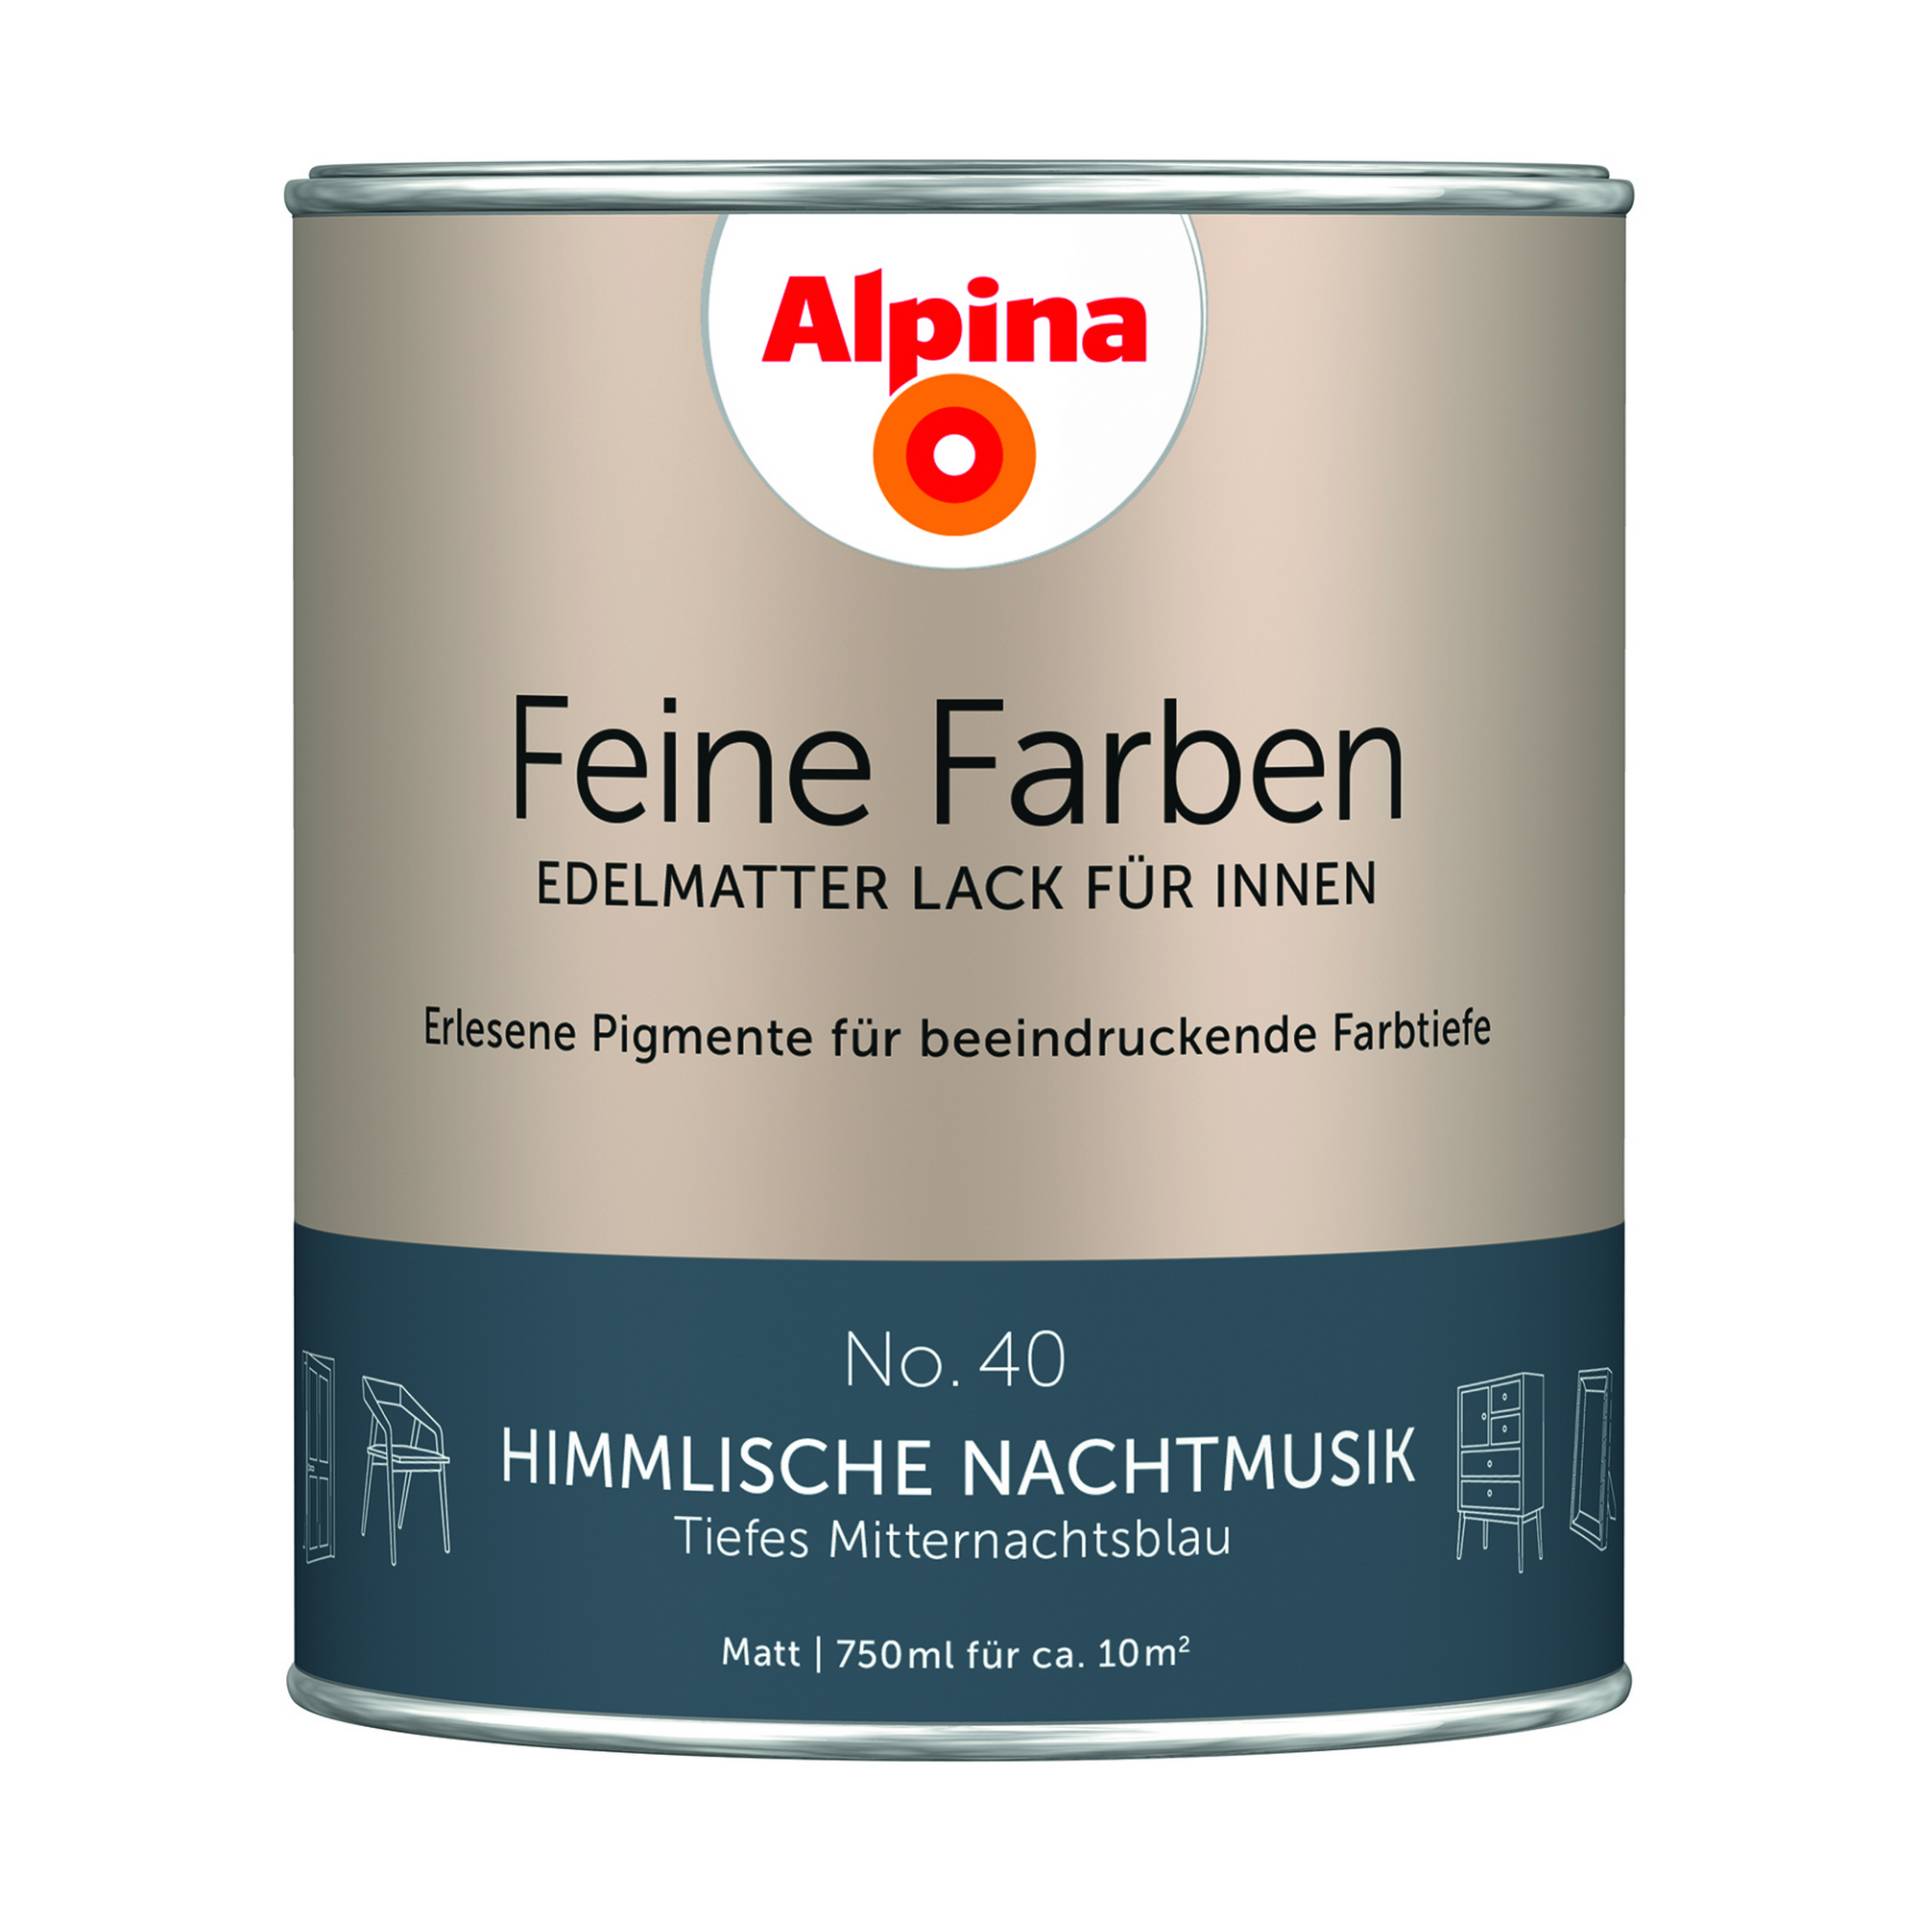 Alpina Feine Farben 'Himmlische Nachtmusik' mitternachtsblau matt 750 ml von Alpina